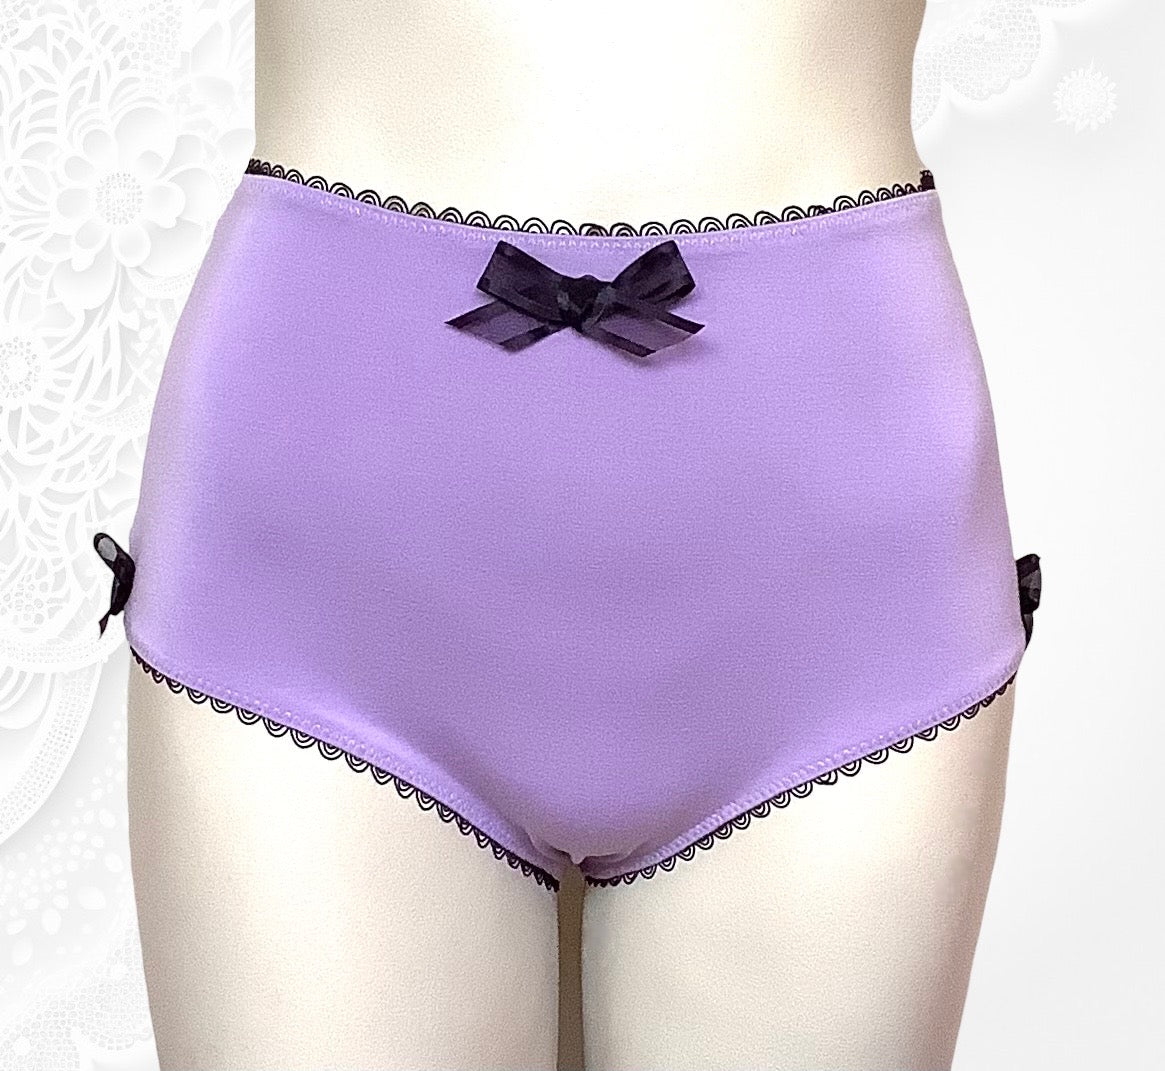 Sweet Bamboo- Girls Underwear- Purple & Orchid Stripe/Purple